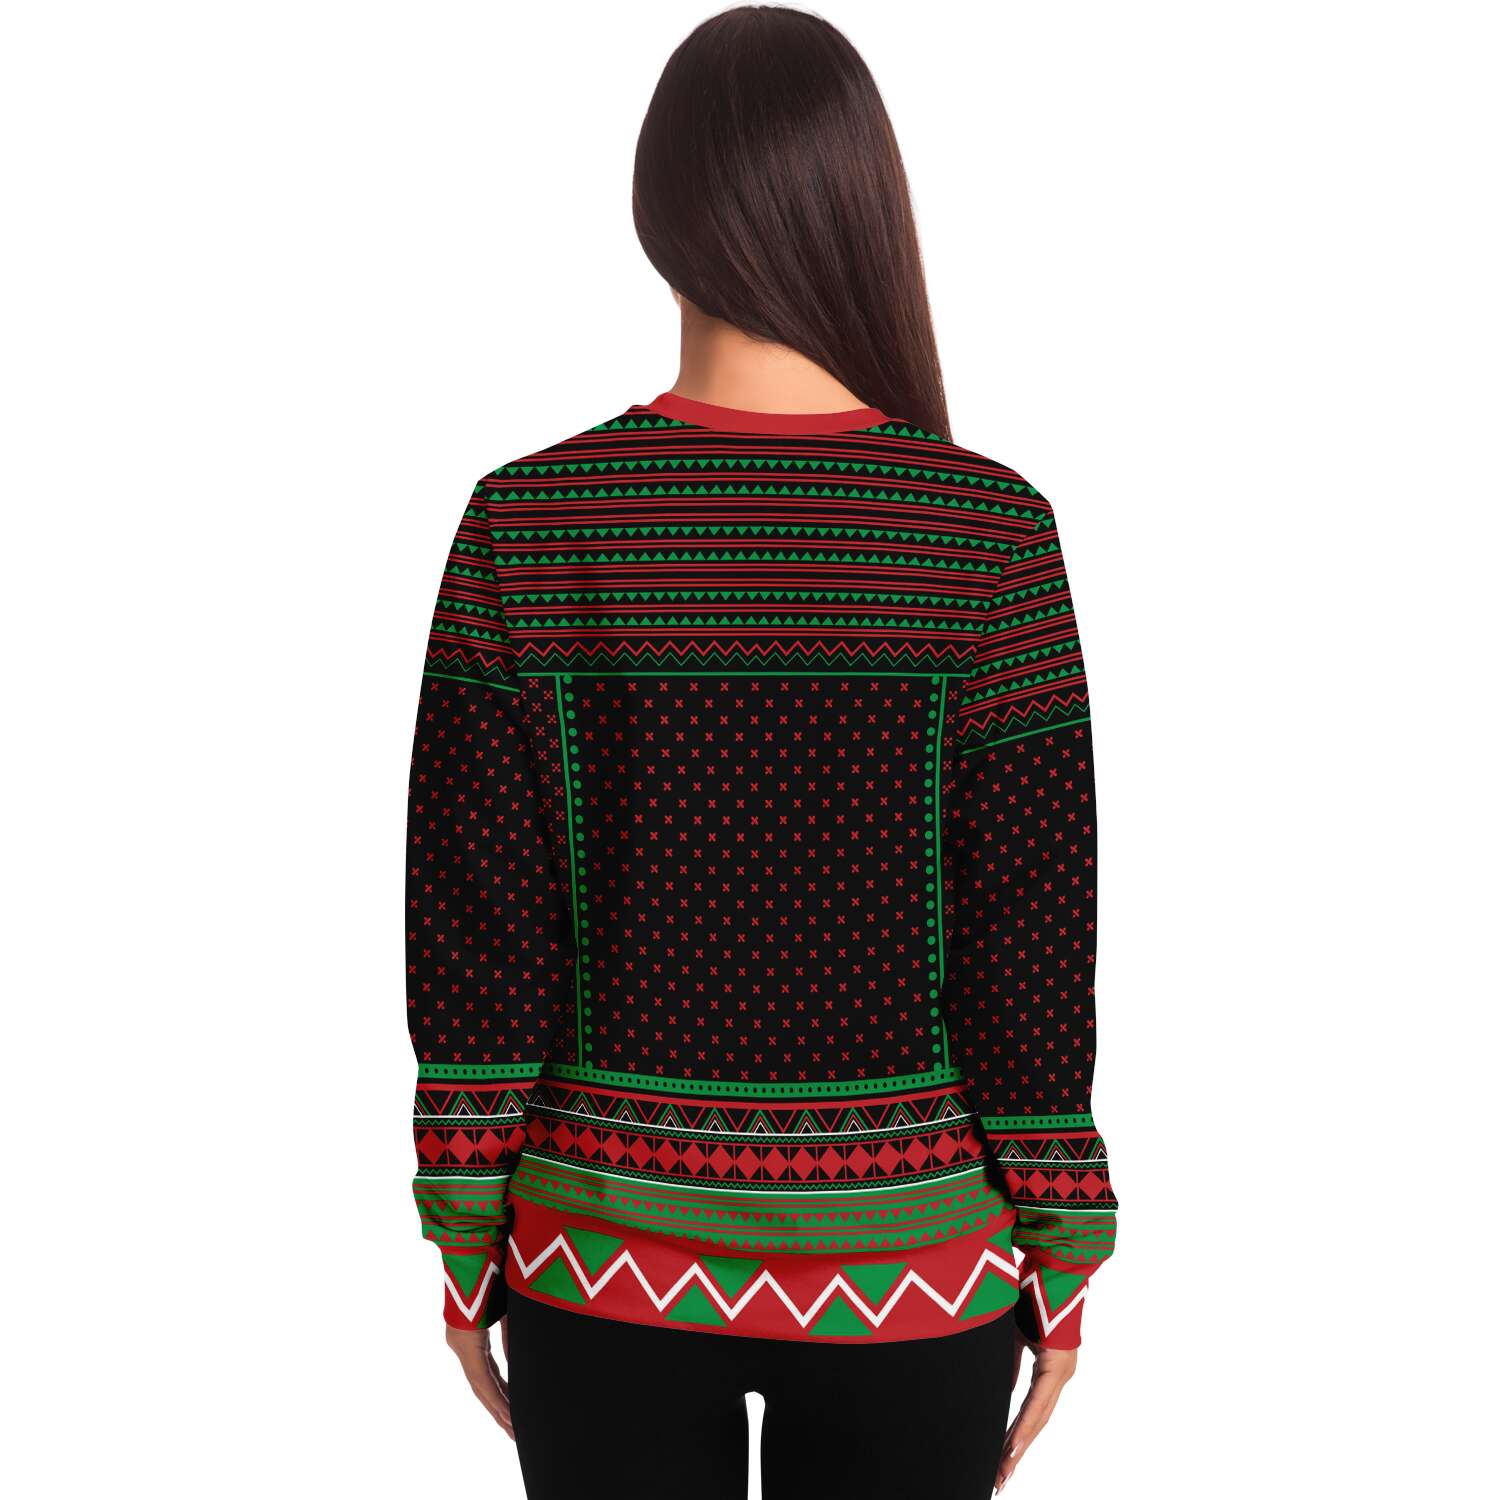 Define Naughty Sweatshirt | Unisex Ugly Christmas Sweater, Xmas Sweater, Holiday Sweater, Festive Sweater, Funny Sweater, Funny Party Shirt